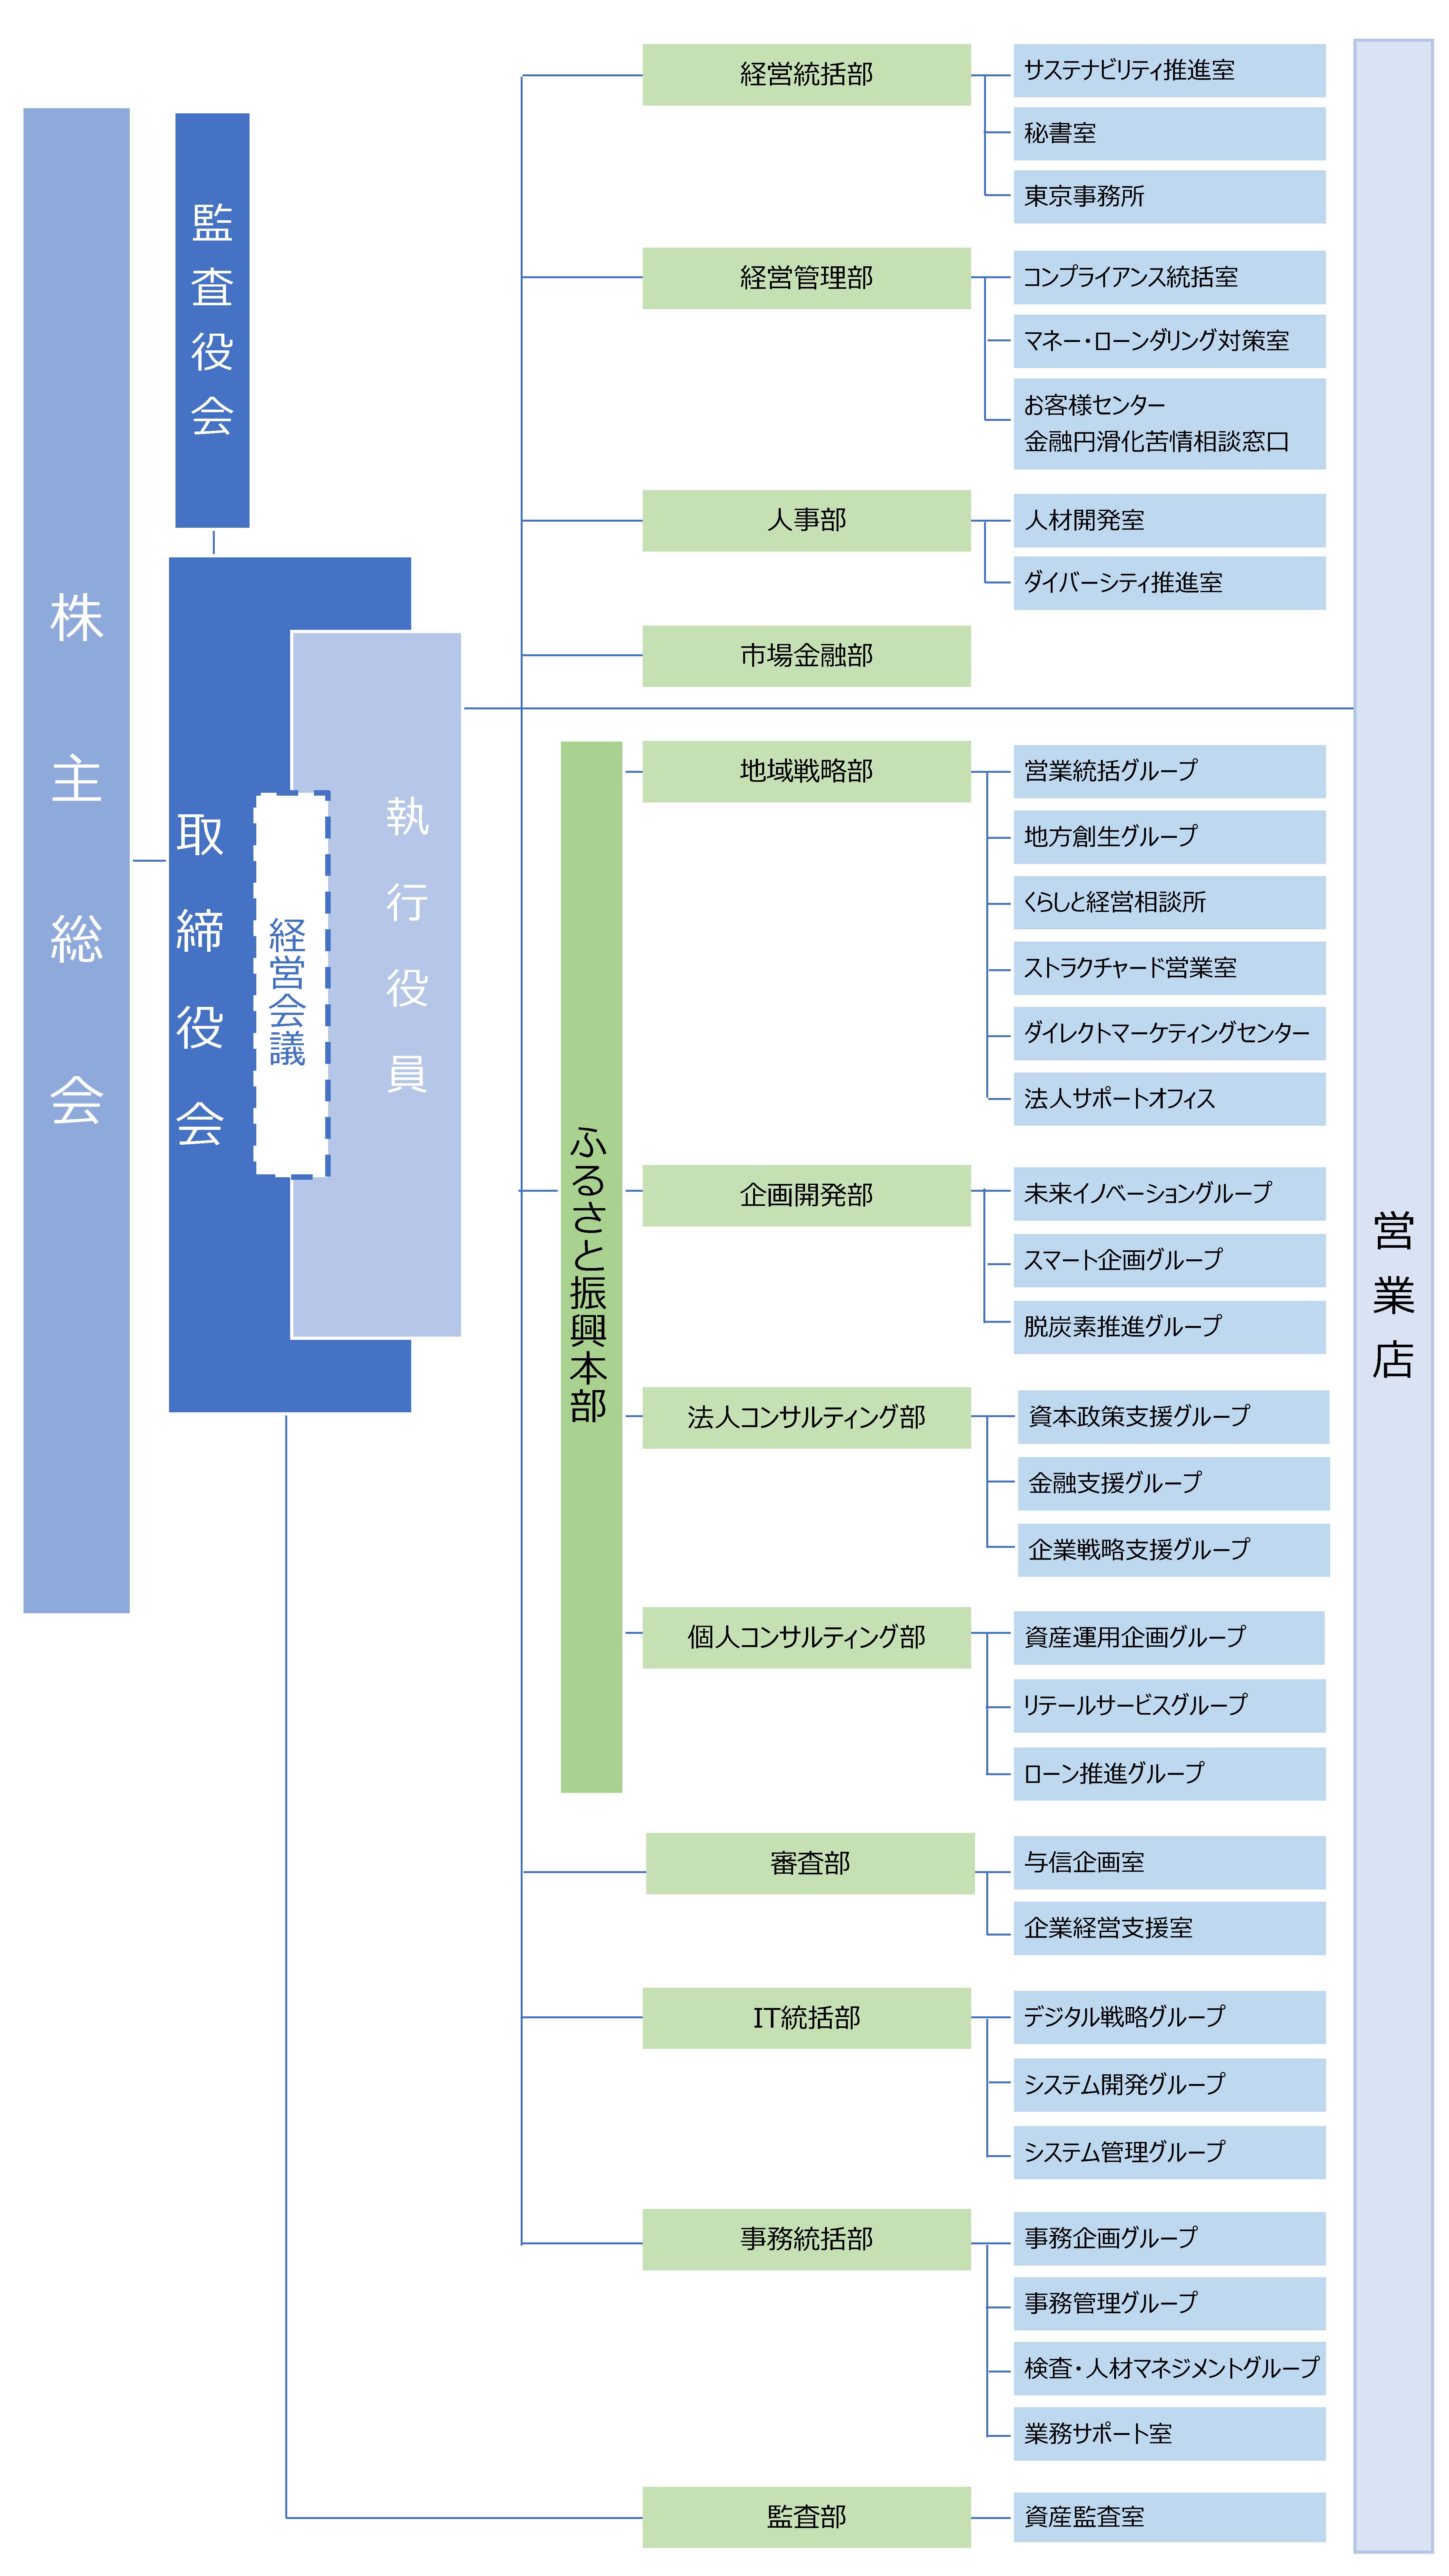 鳥取銀行組織図